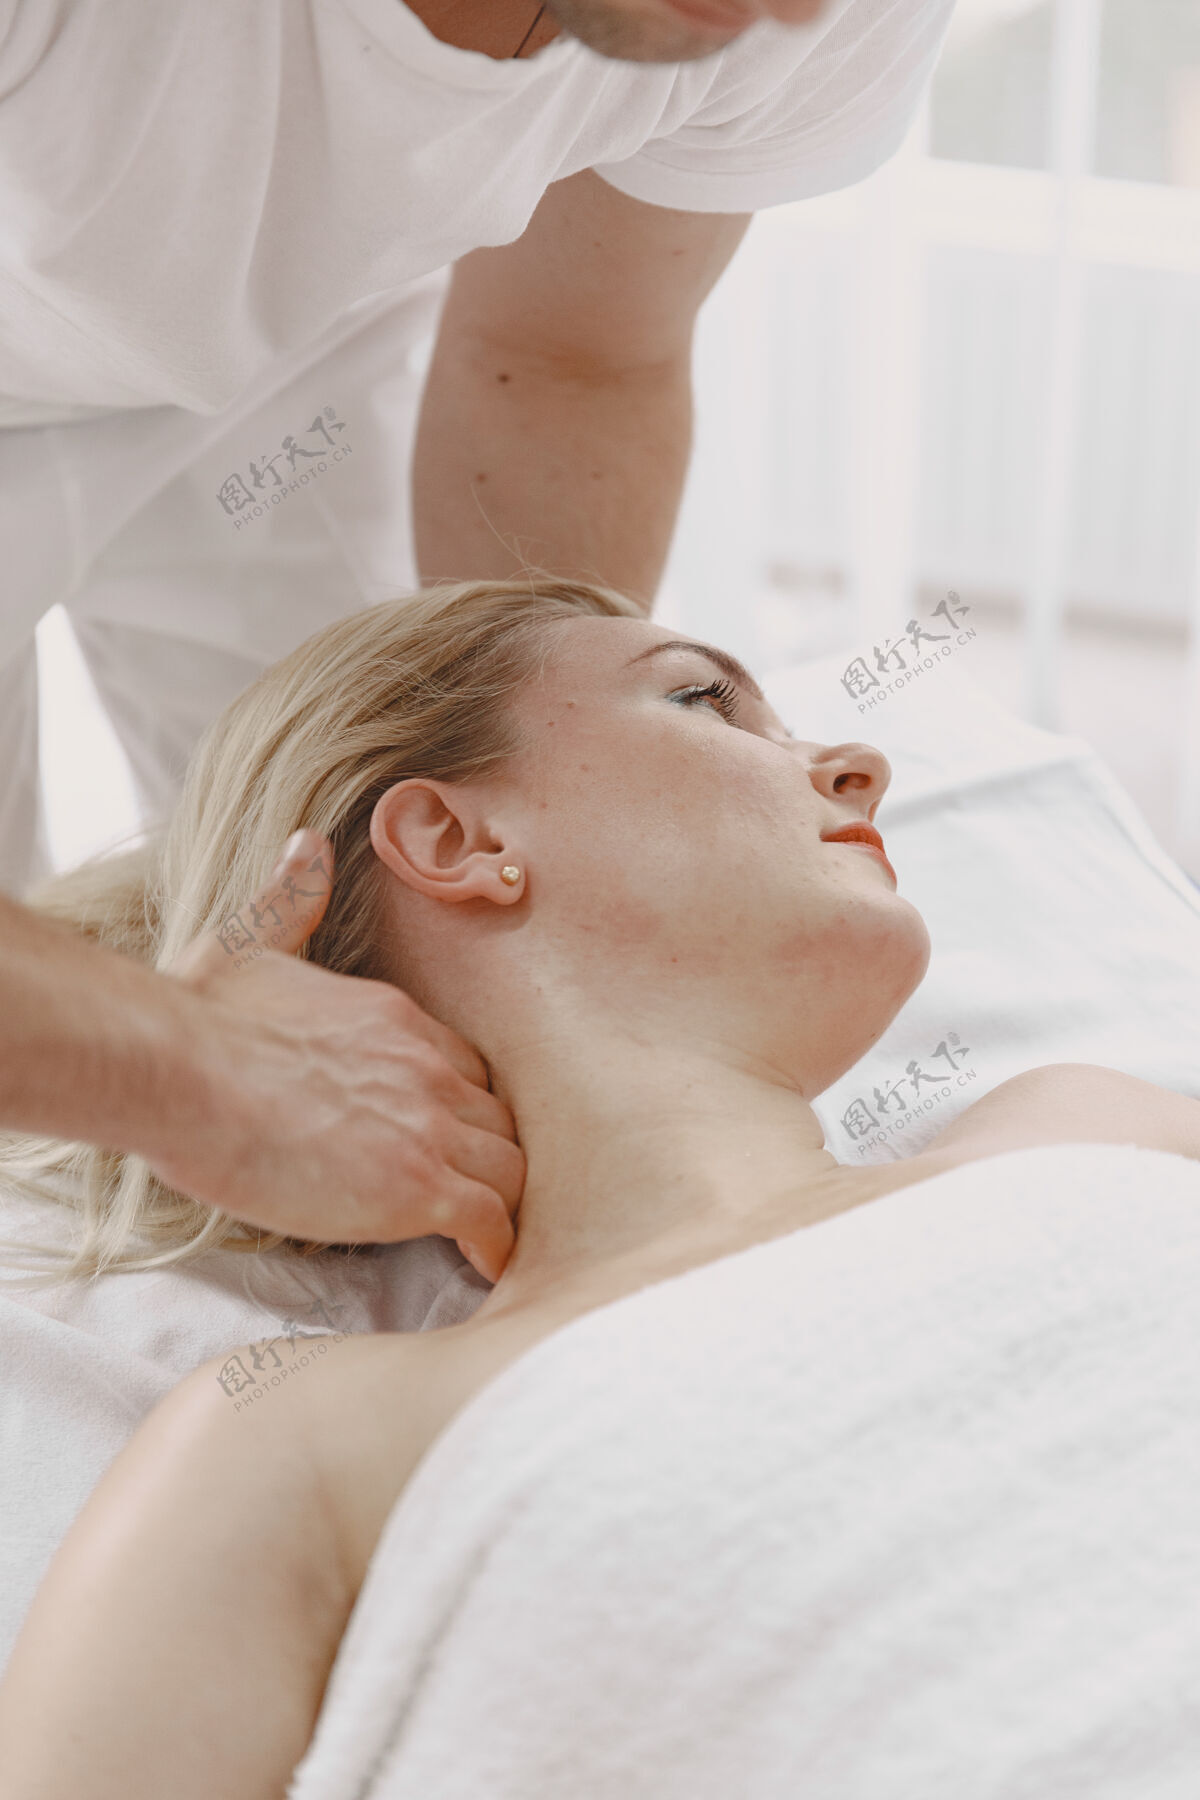 背部保健和女性美容的概念按摩师给一个女孩做按摩在一个水疗沙龙的女人女性皮肤水疗